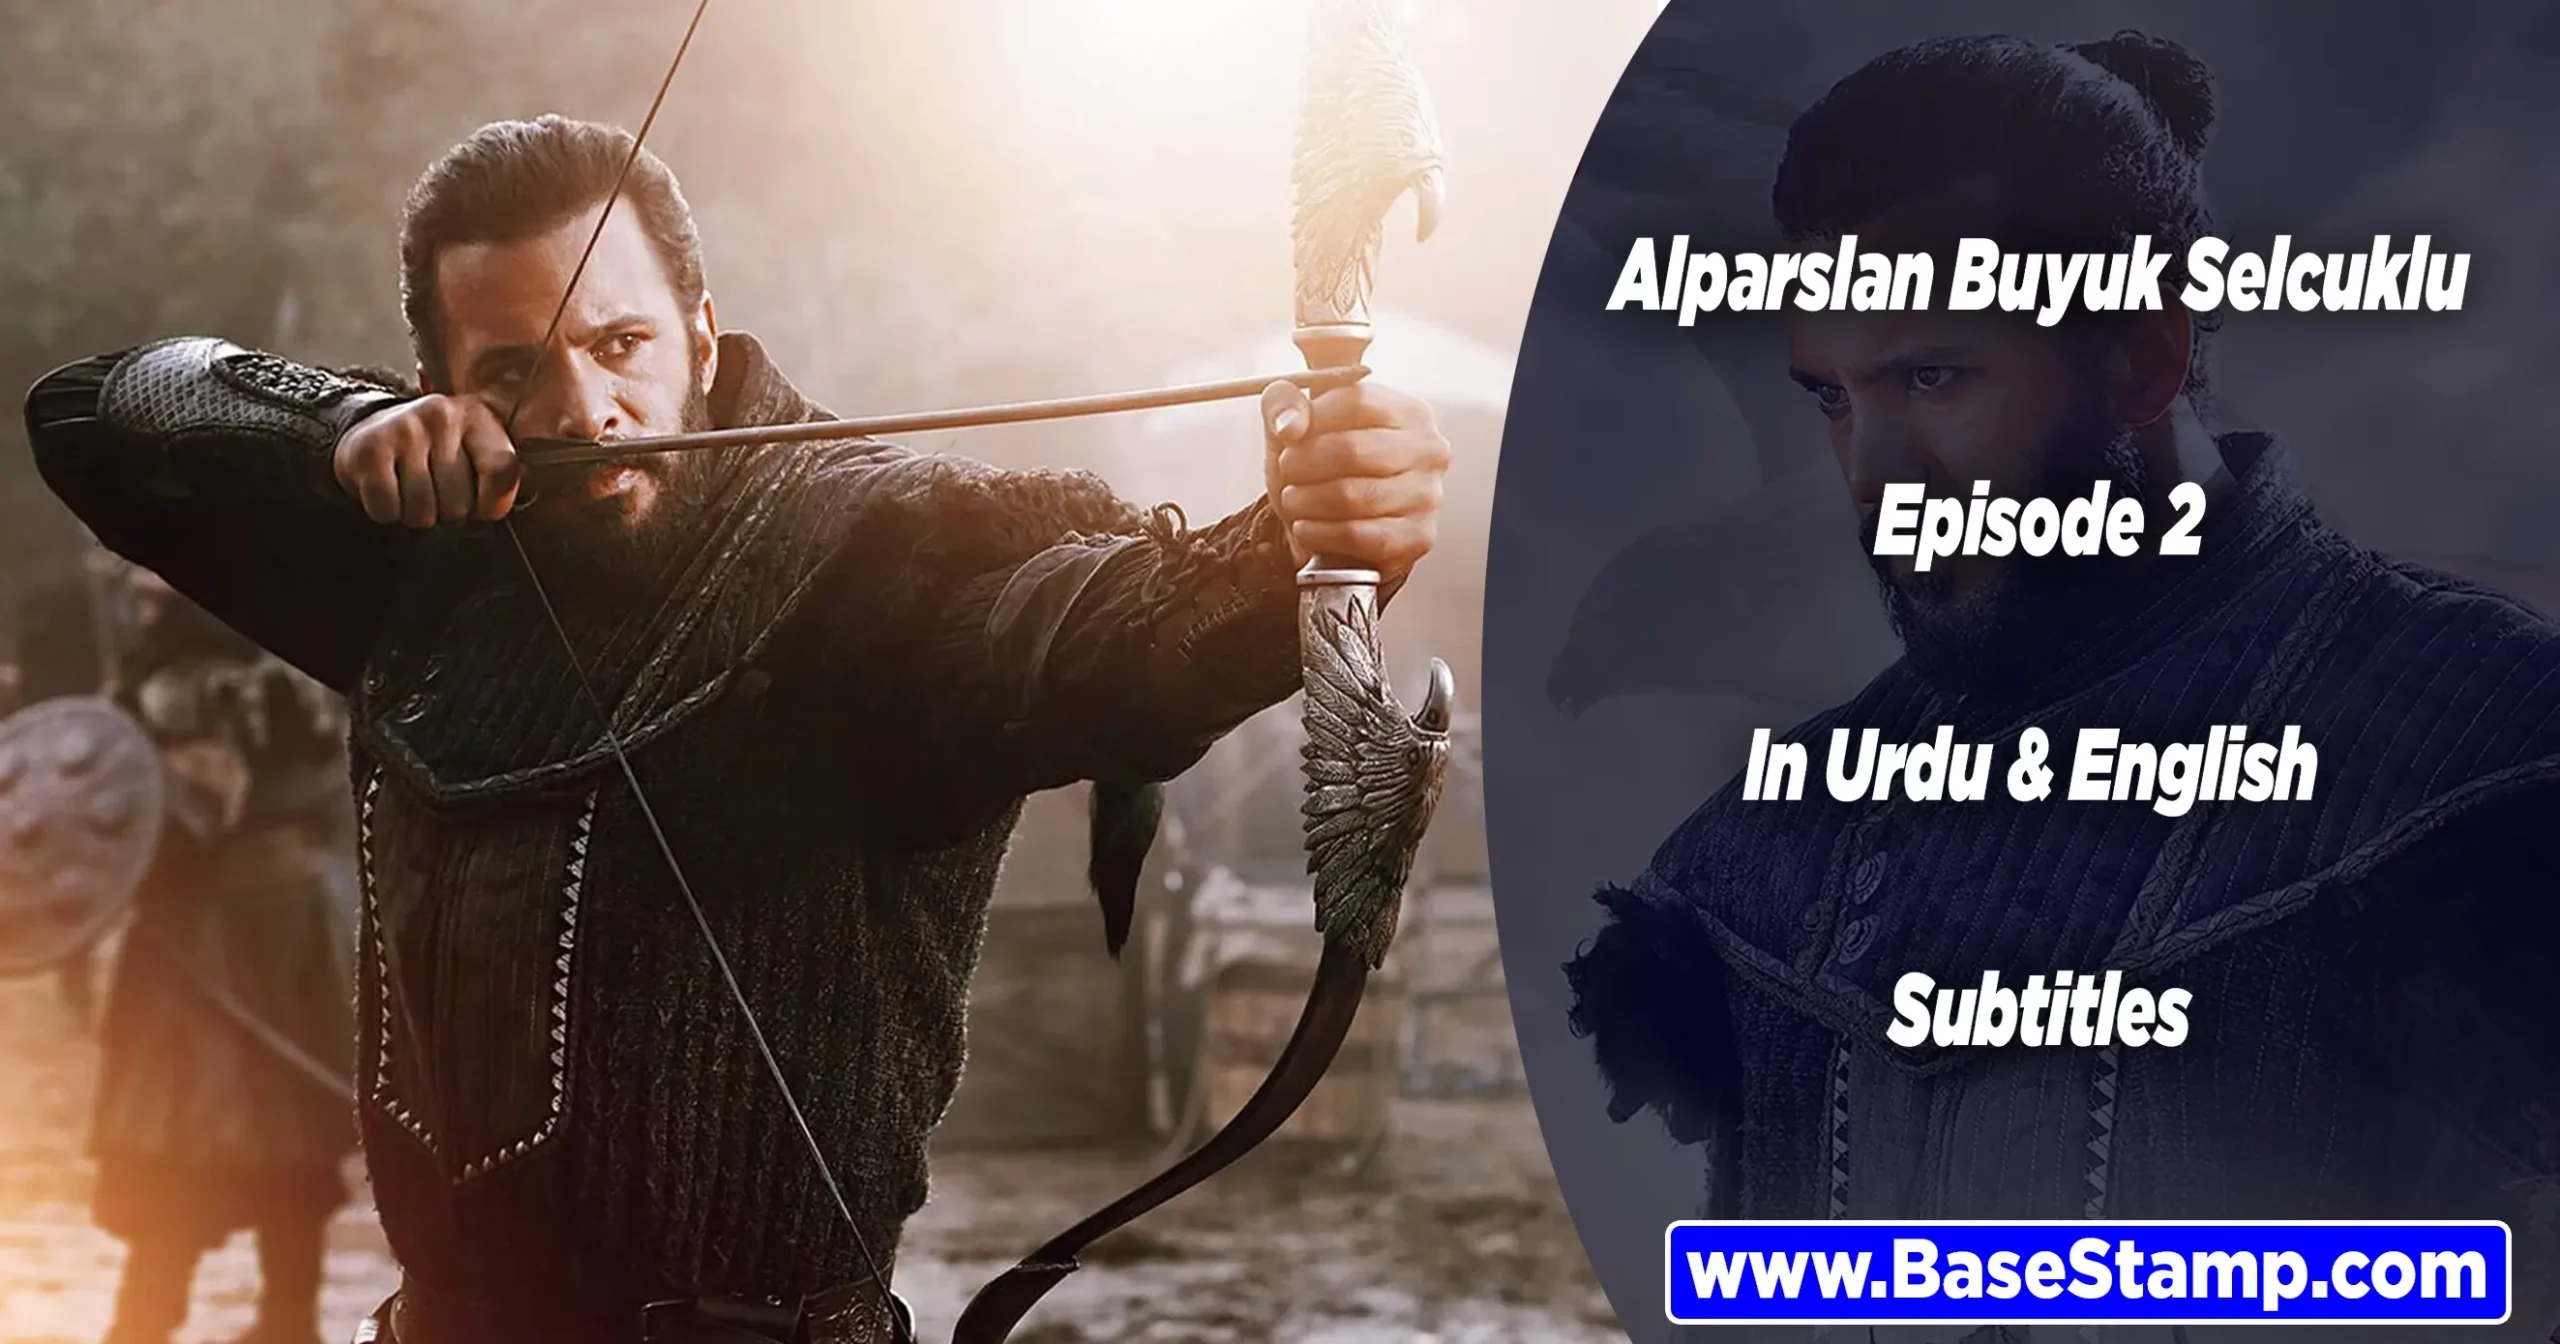 Alparslan Buyuk Selcuklu Episode 2 In Urdu & English Subtitles